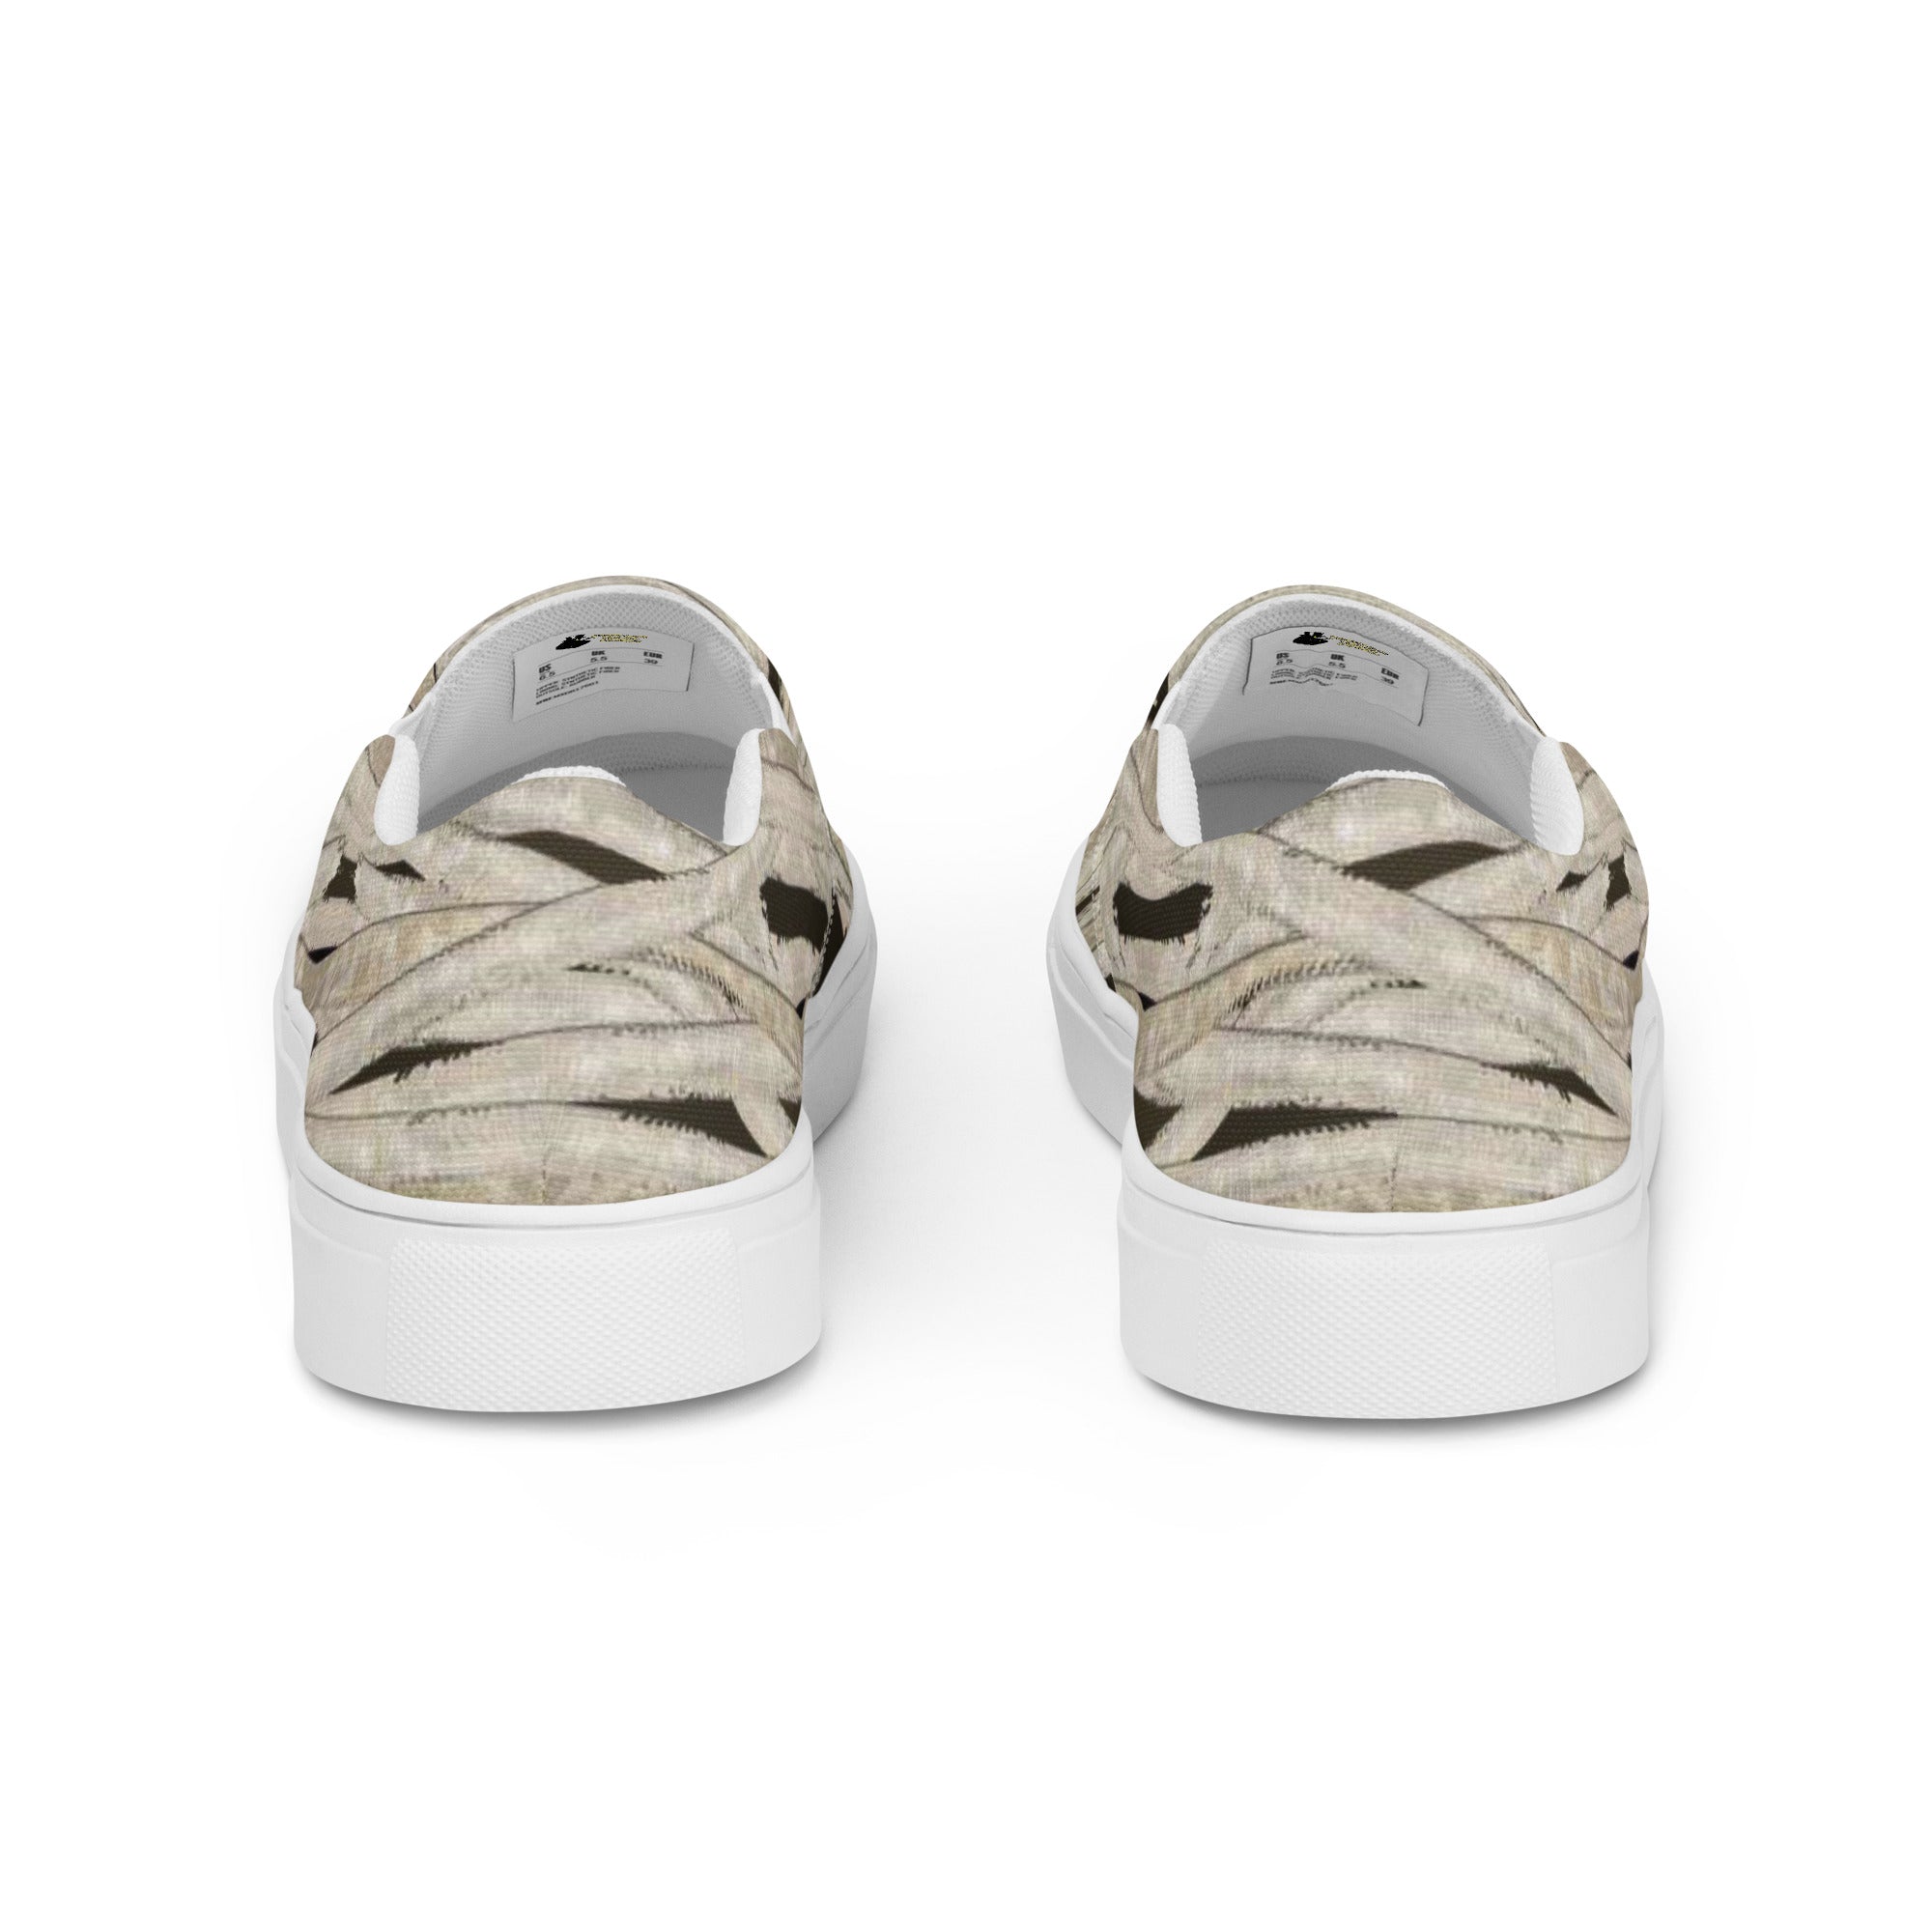 Mummy Wraps Men’s Slip-on Canvas Shoes